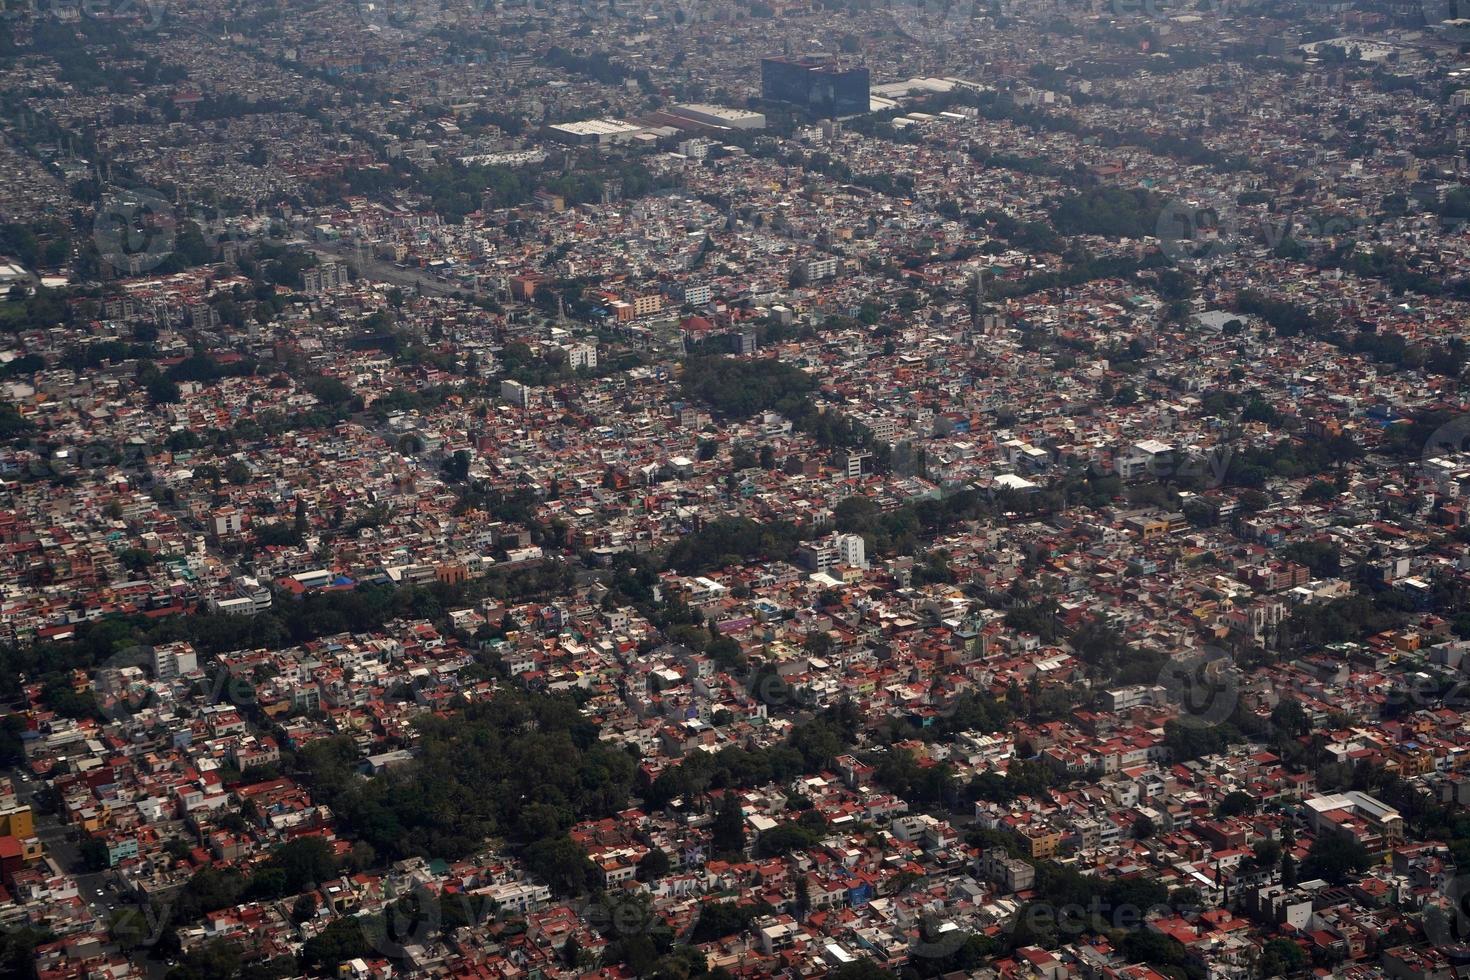 paysage de panorama aérien de la ville de mexico depuis un avion photo